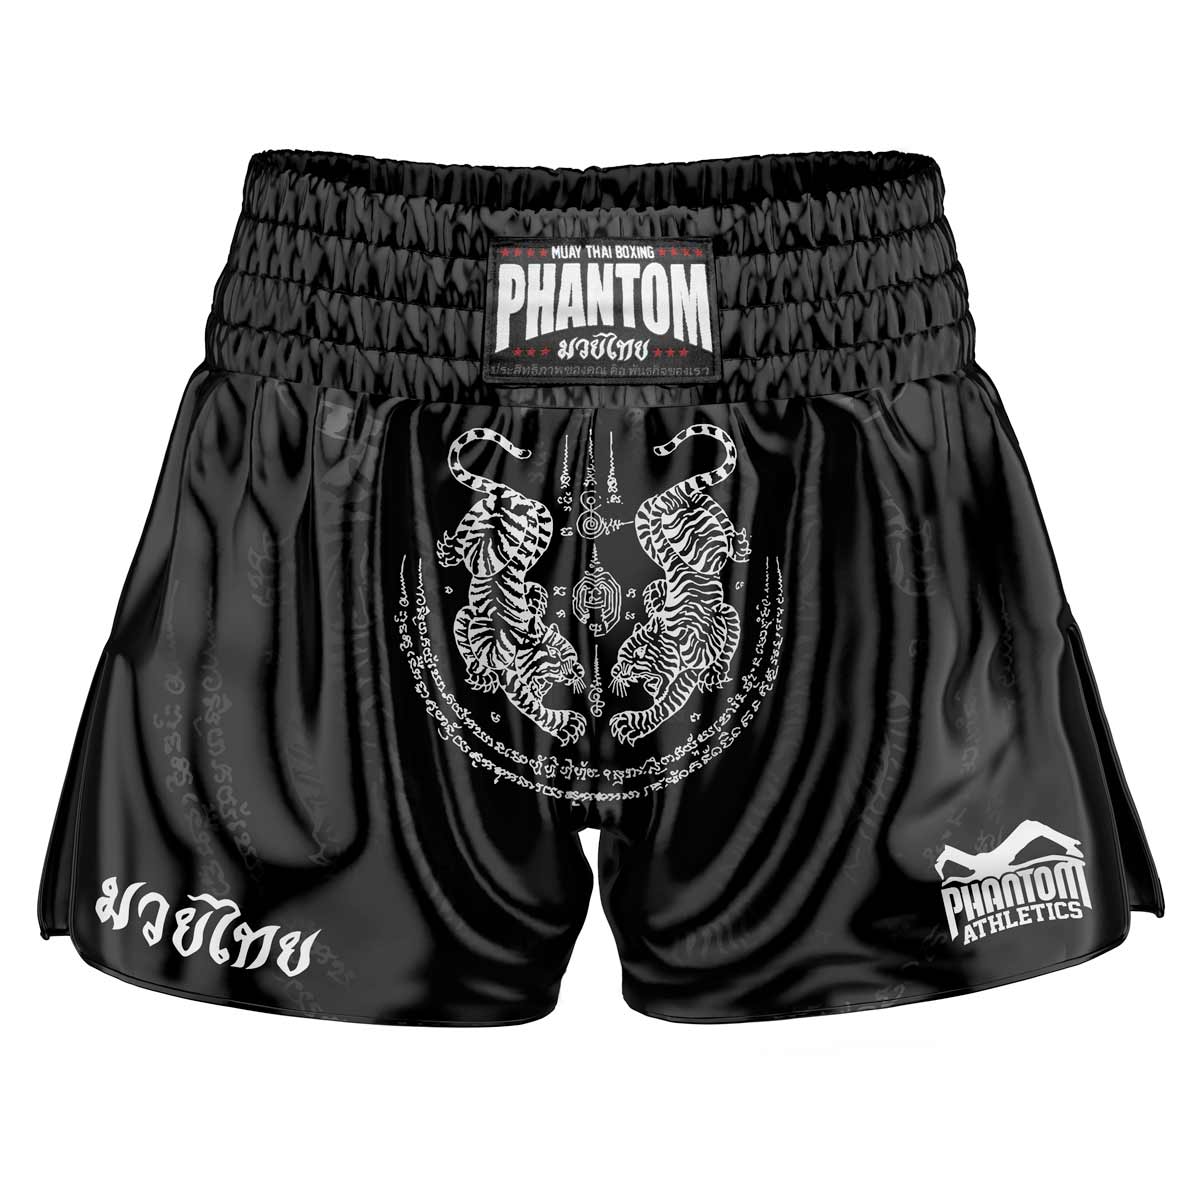 Spodenki Phantom Muay Thai SAK YANT w kolorze czarnym. Satynowa tkanina w starym stylu z tradycyjnym wzorem tygrysa nadaje oryginalny klimat Tajlandii. W zwykłej jakości Phantom Athletics . Idealny na treningi i zawody boksu tajskiego.